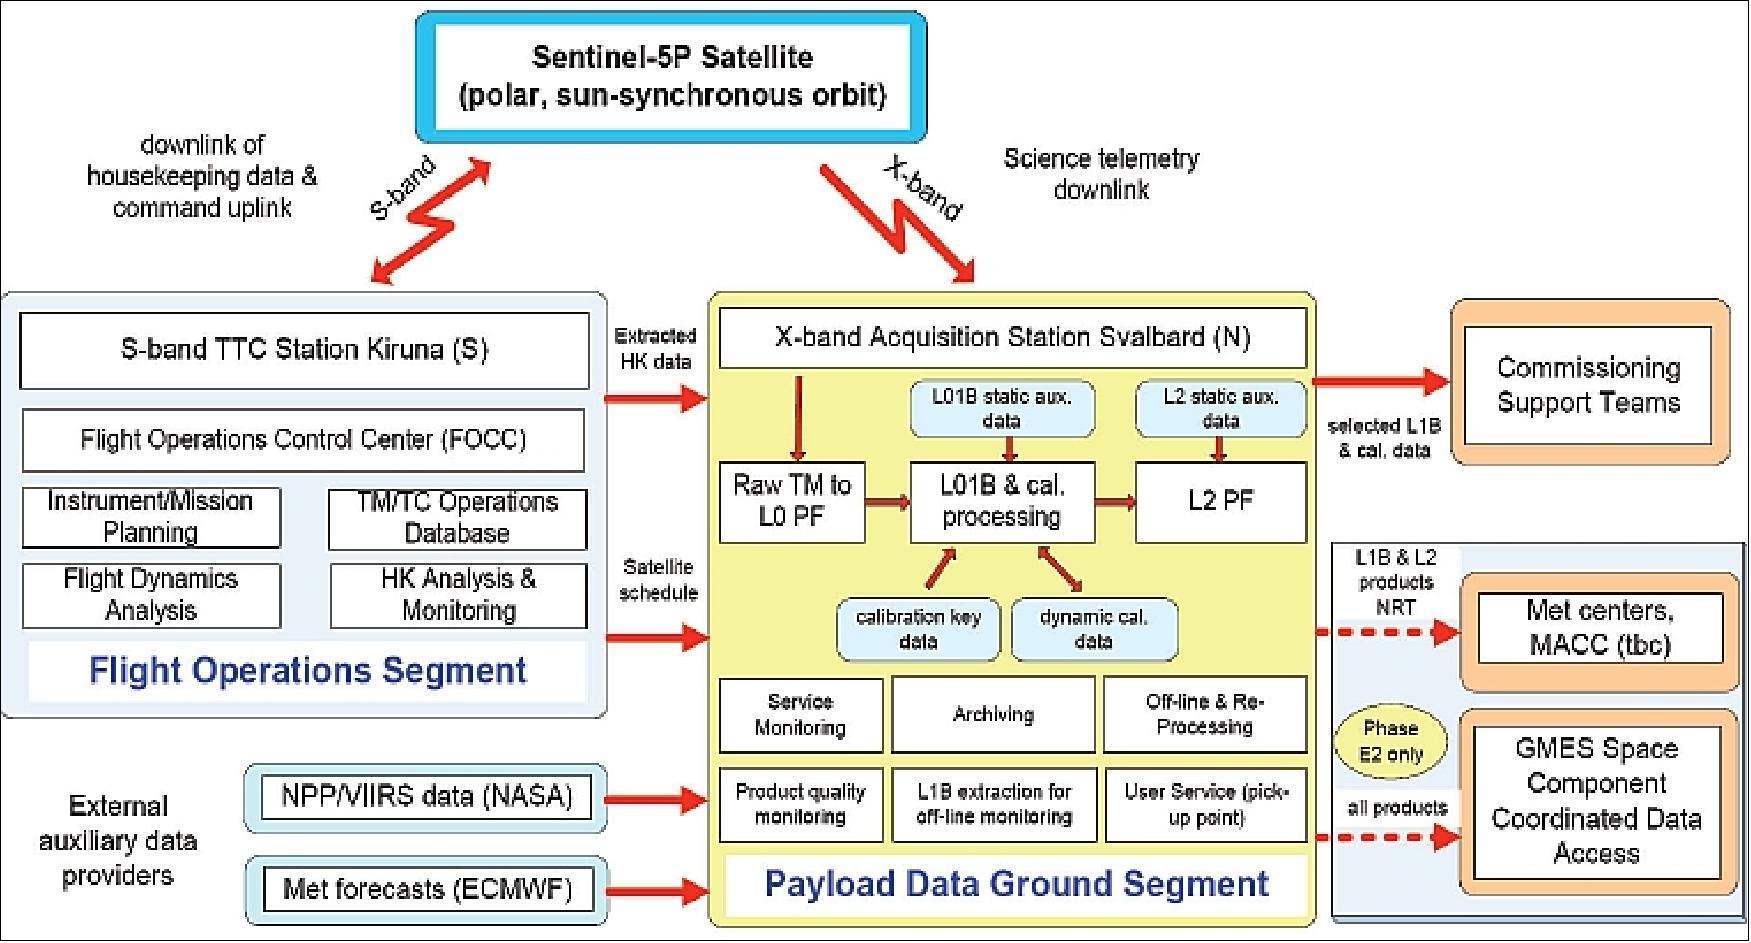 Figure 112: Ground segment schematic data flow (image credit: ESA, Ref. 62)